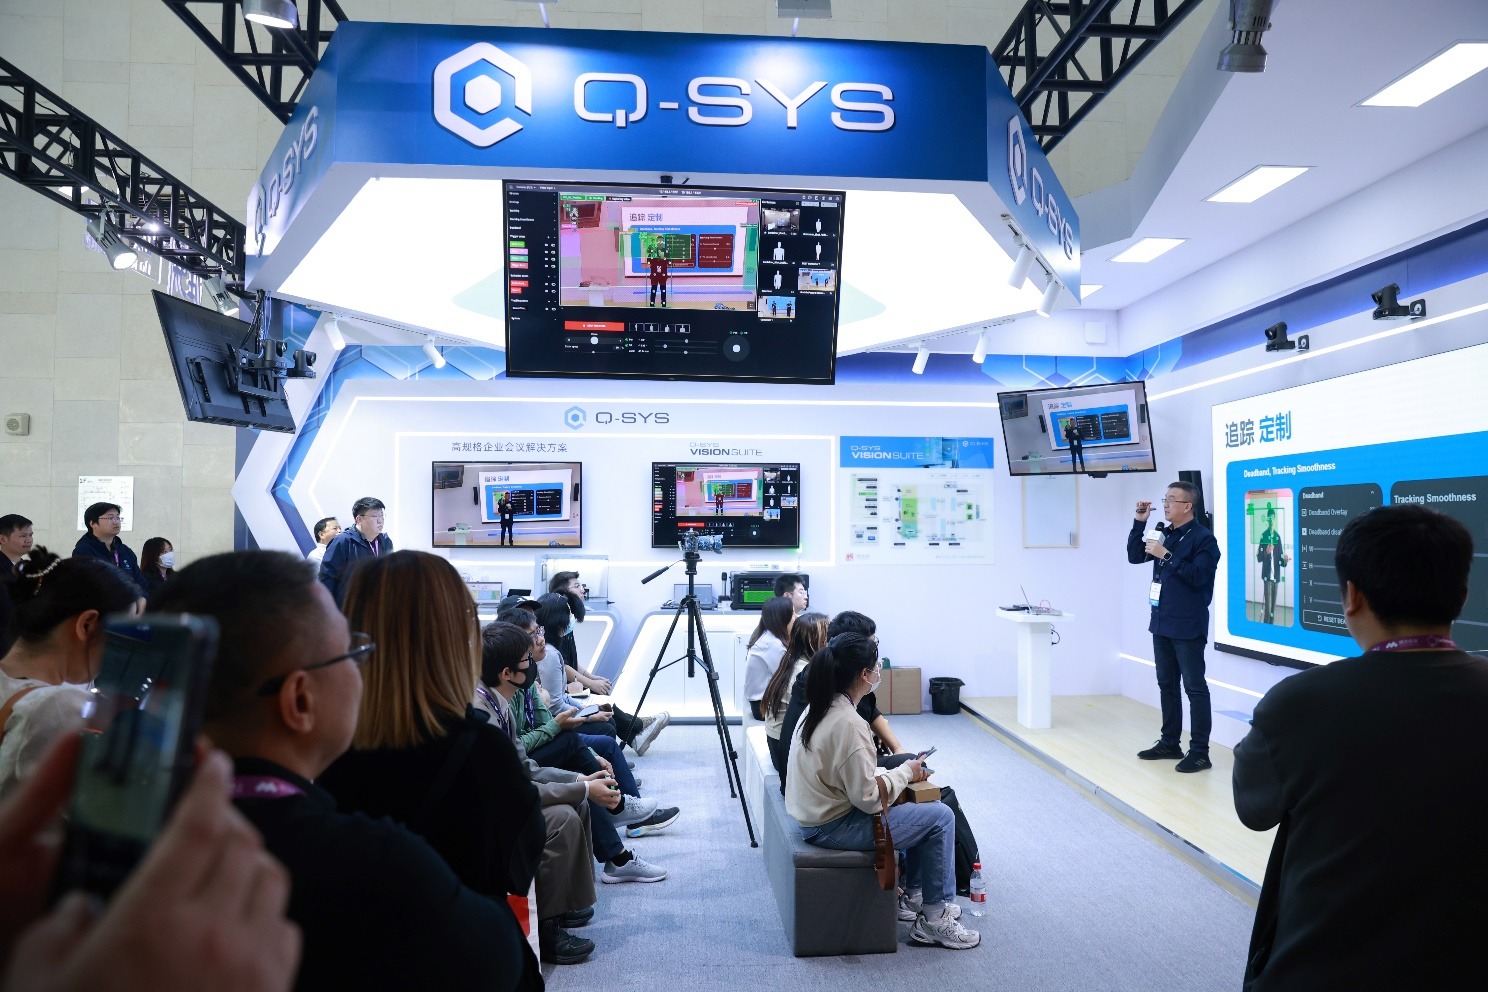 Q-SYS桥思AI+技术首秀InfoCommChina，提升智能化会议独特视听体验新高度